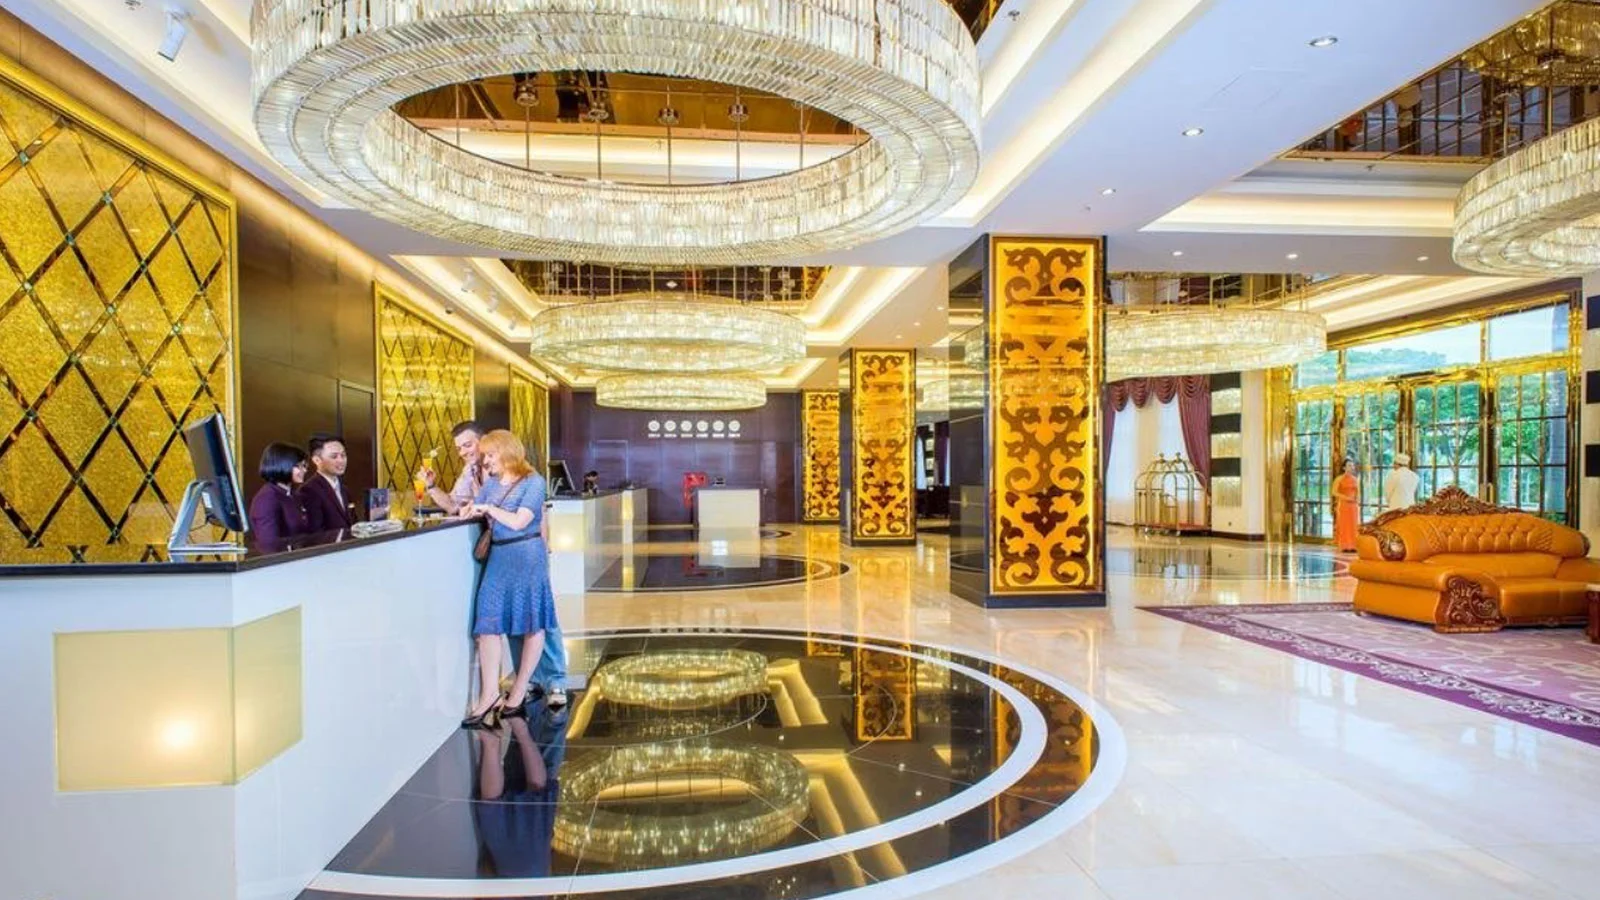 Khách sạn Royal Hạ Long Hotel